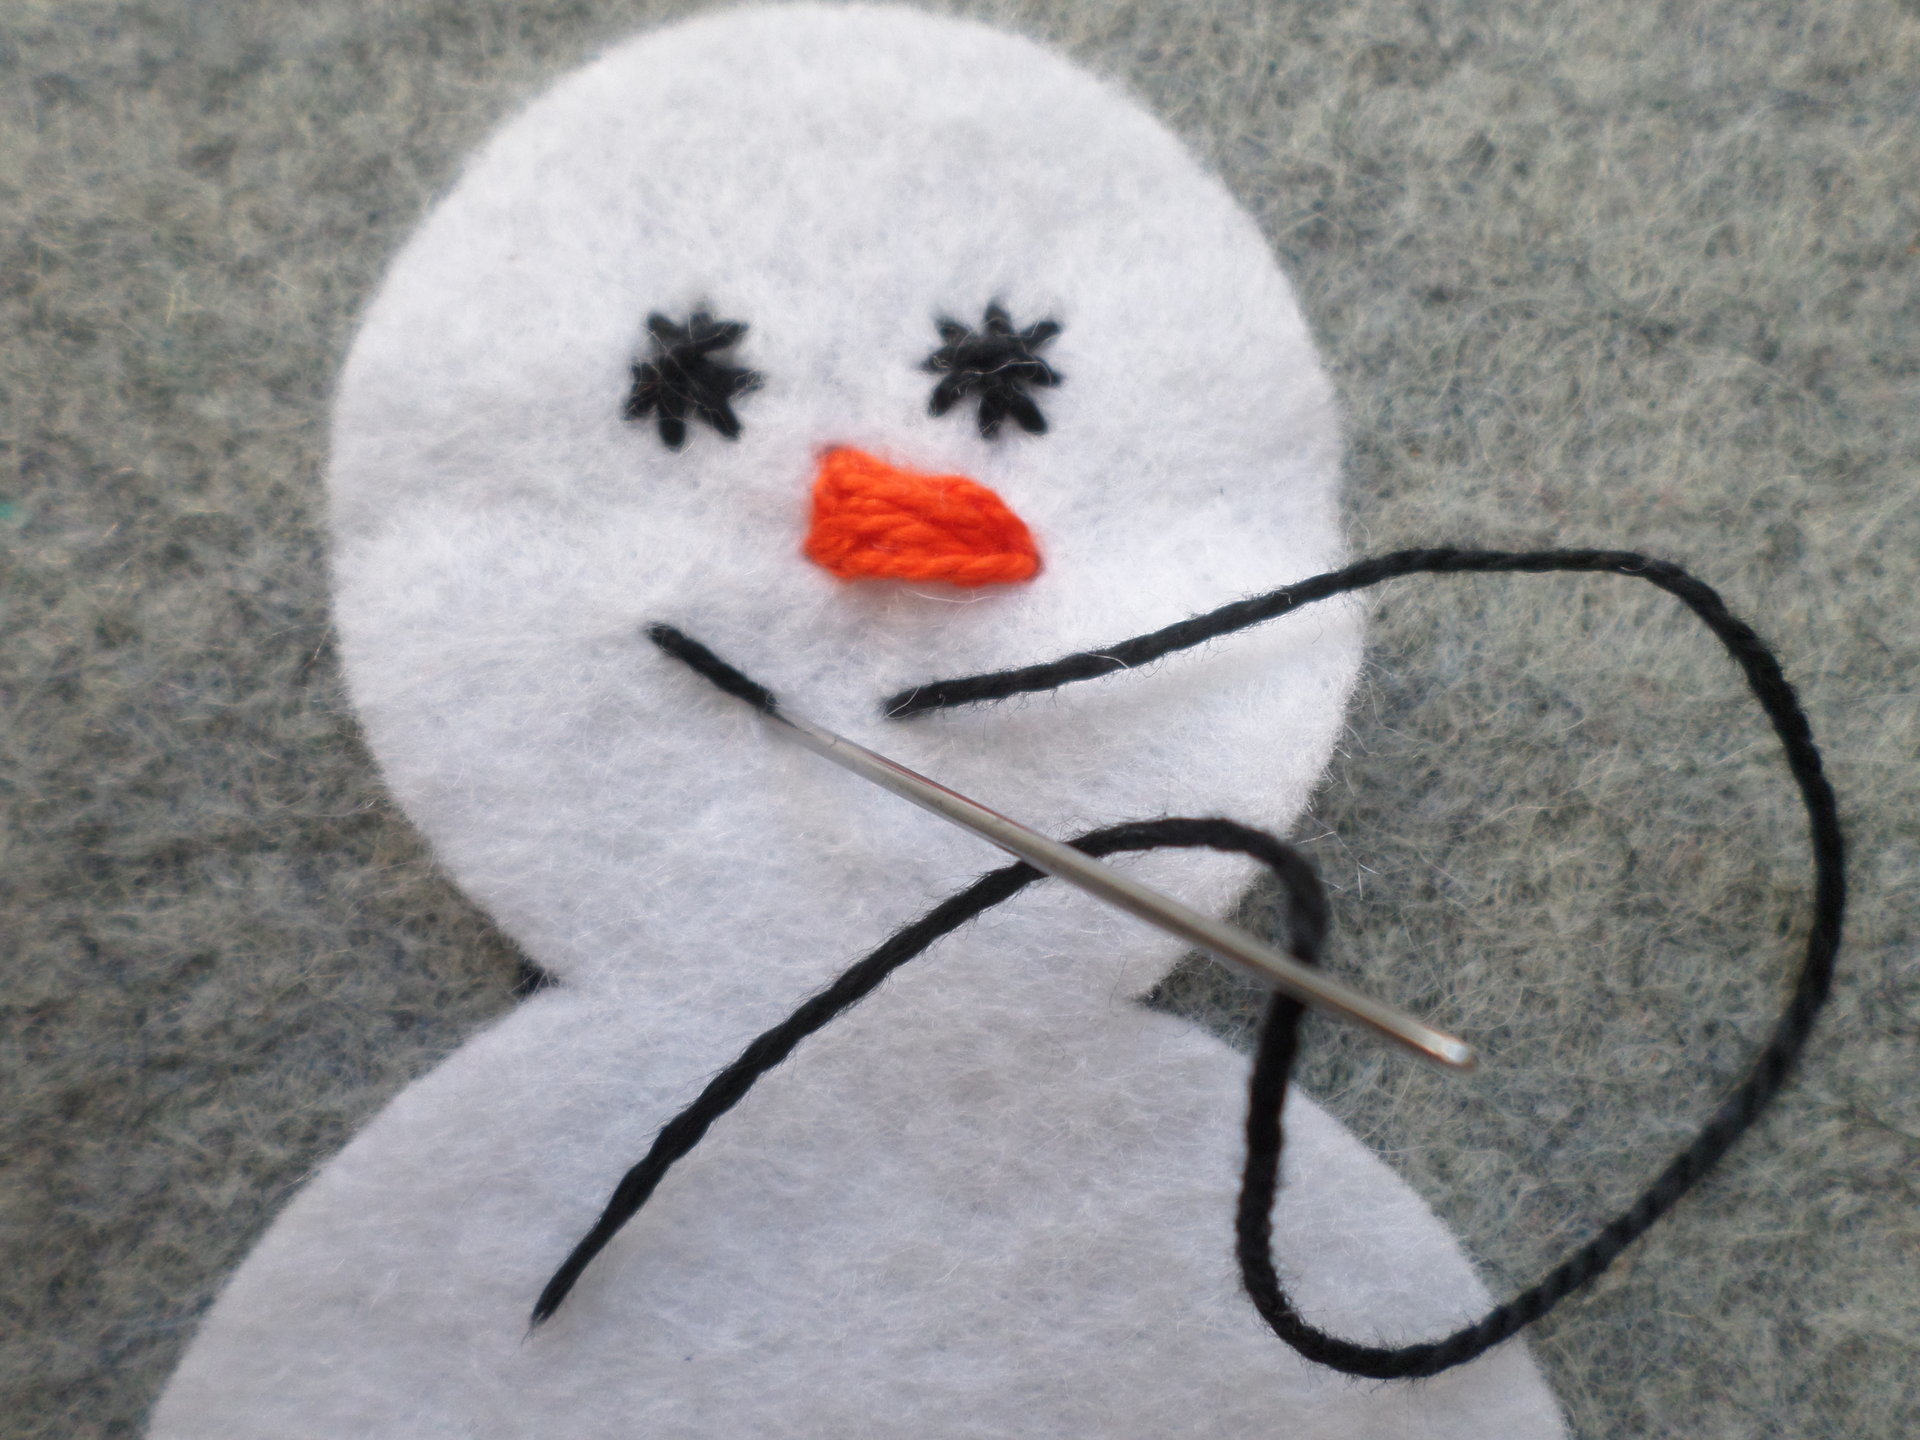 Snowman Felt Holiday Ornament DIY Kit 